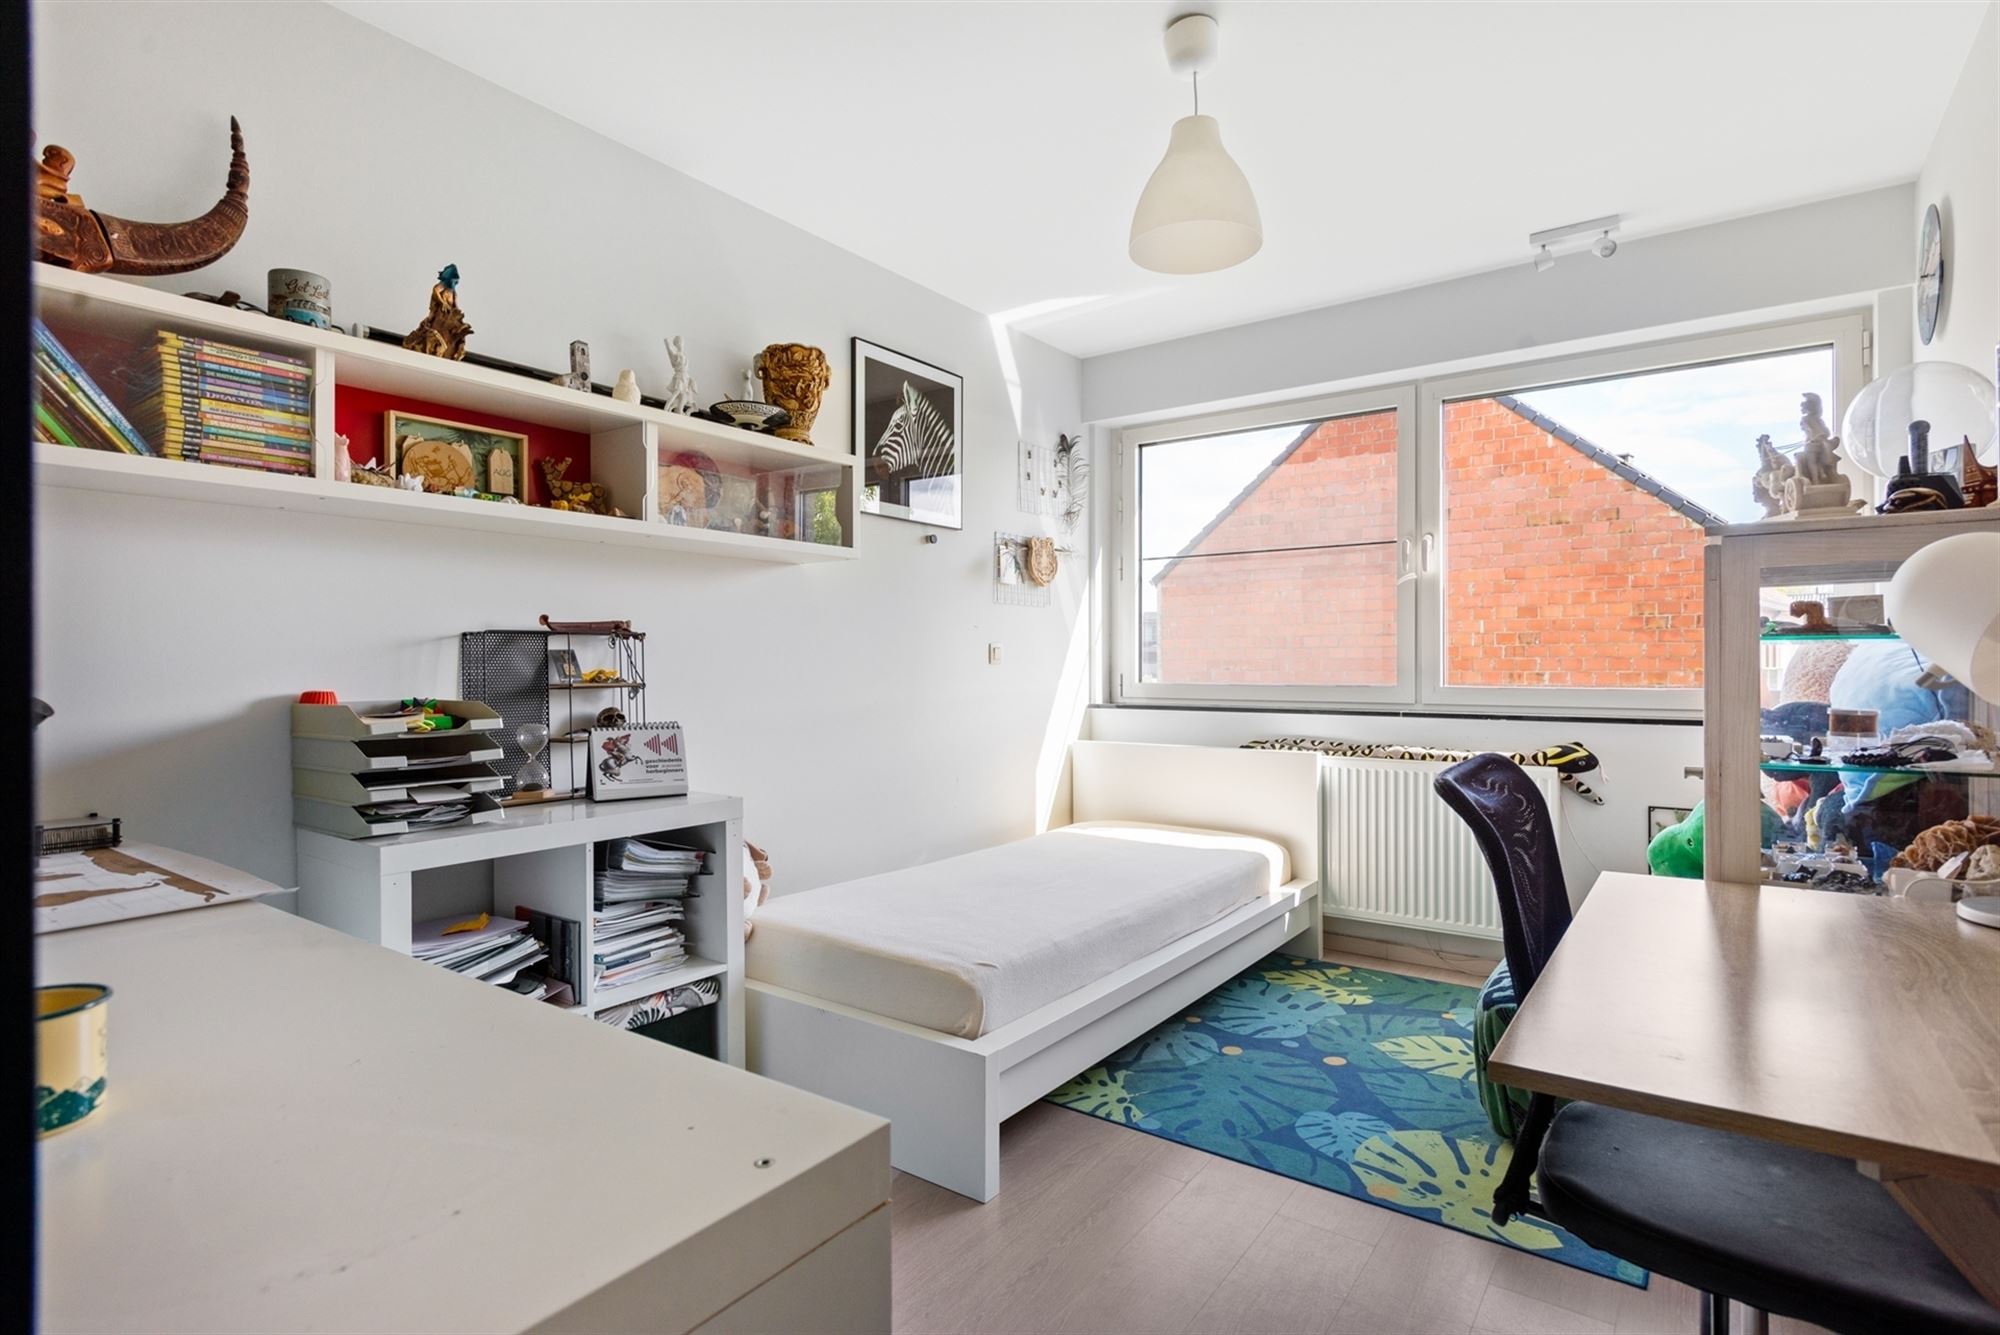 Recente woning met 5 slaapkamers op een A-locatie te Sint-Katelijne-Waver